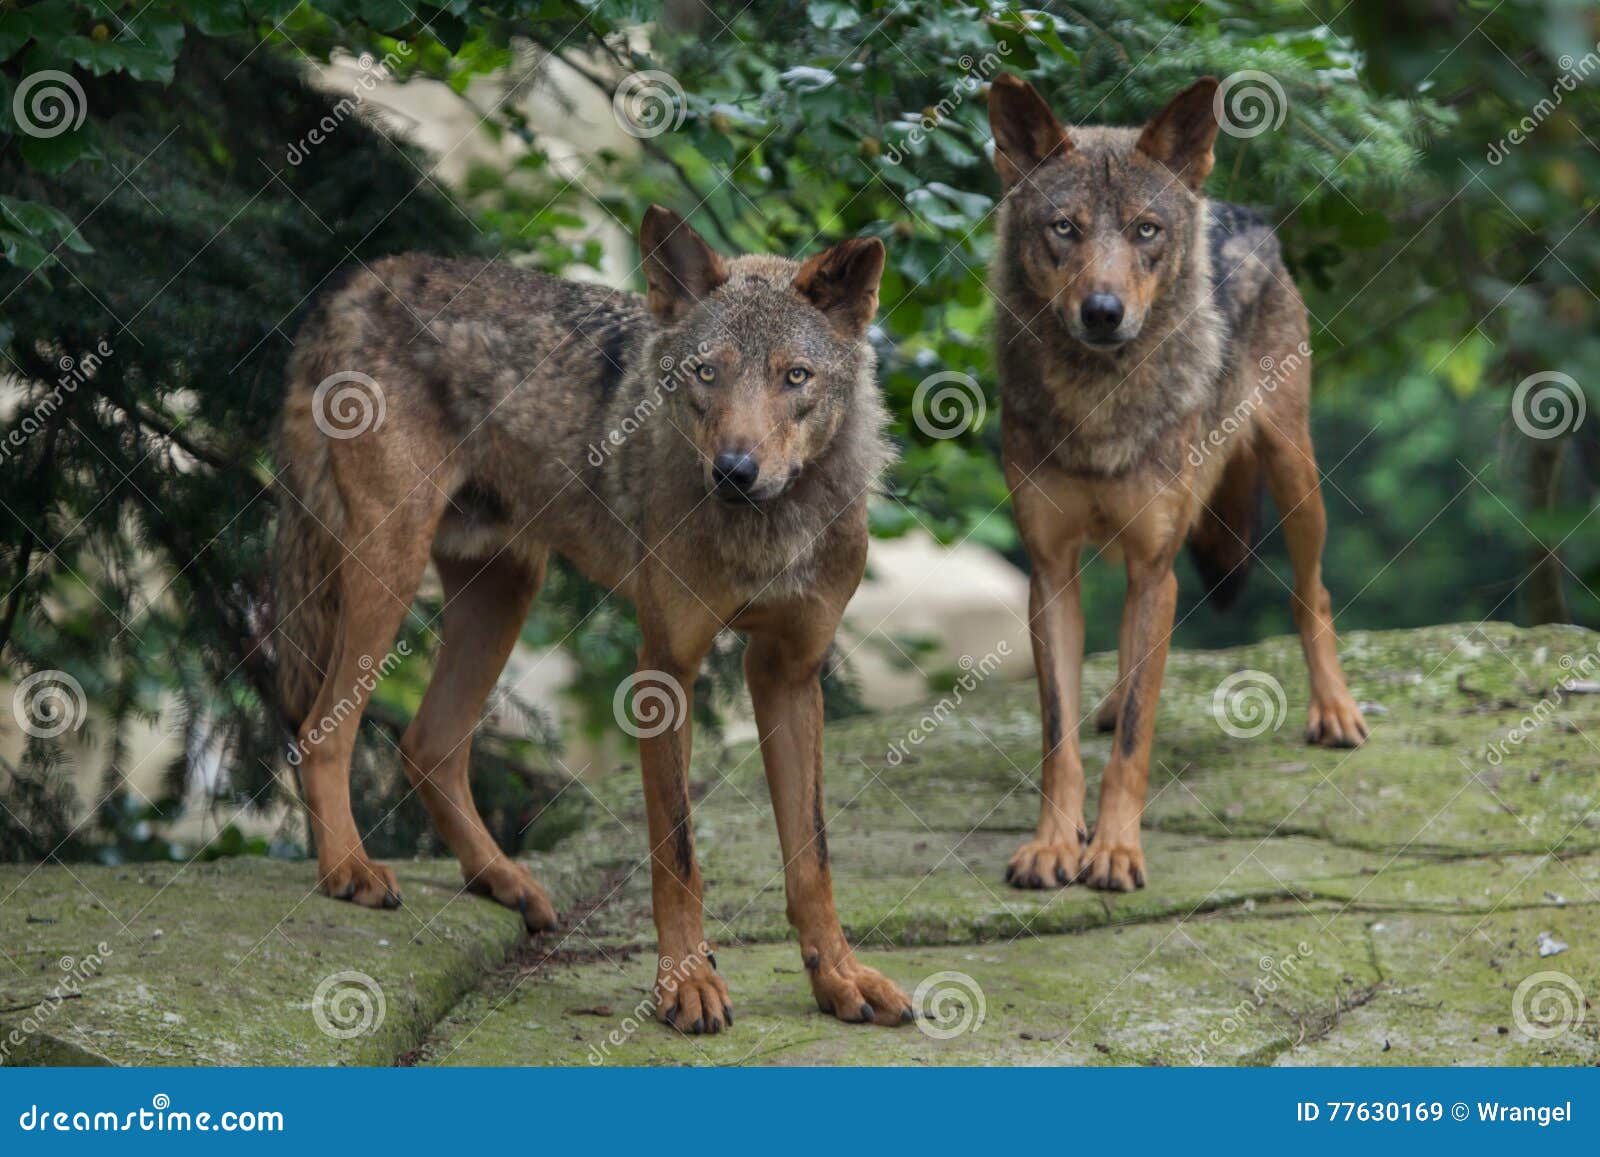 iberian wolf (canis lupus signatus).